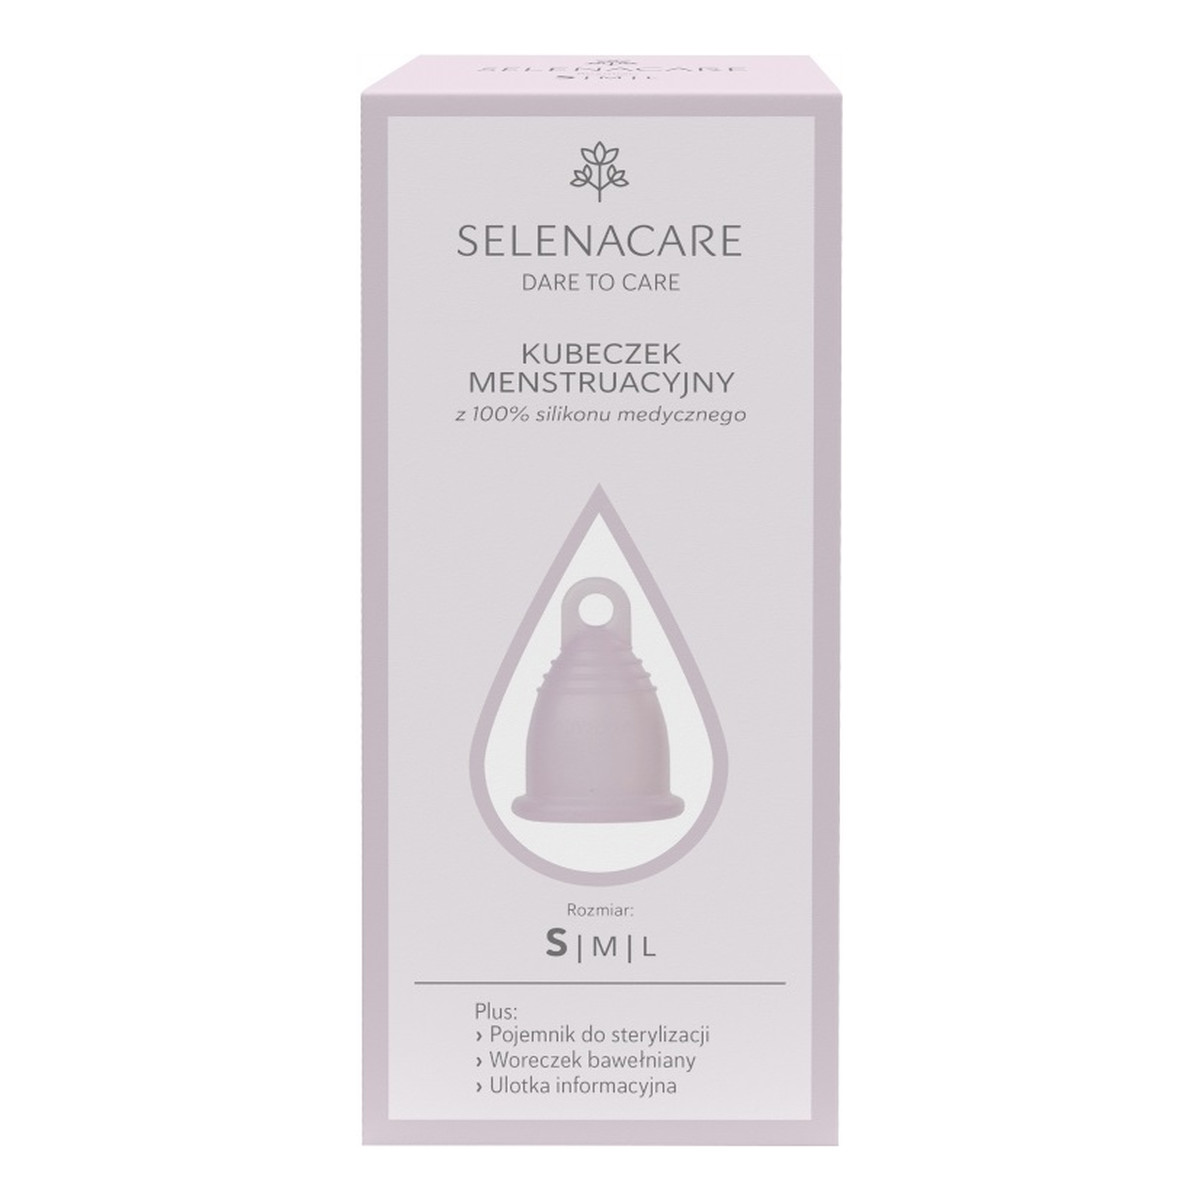 Selenacare Premium kubeczek menstruacyjny z silikonu medycznego s